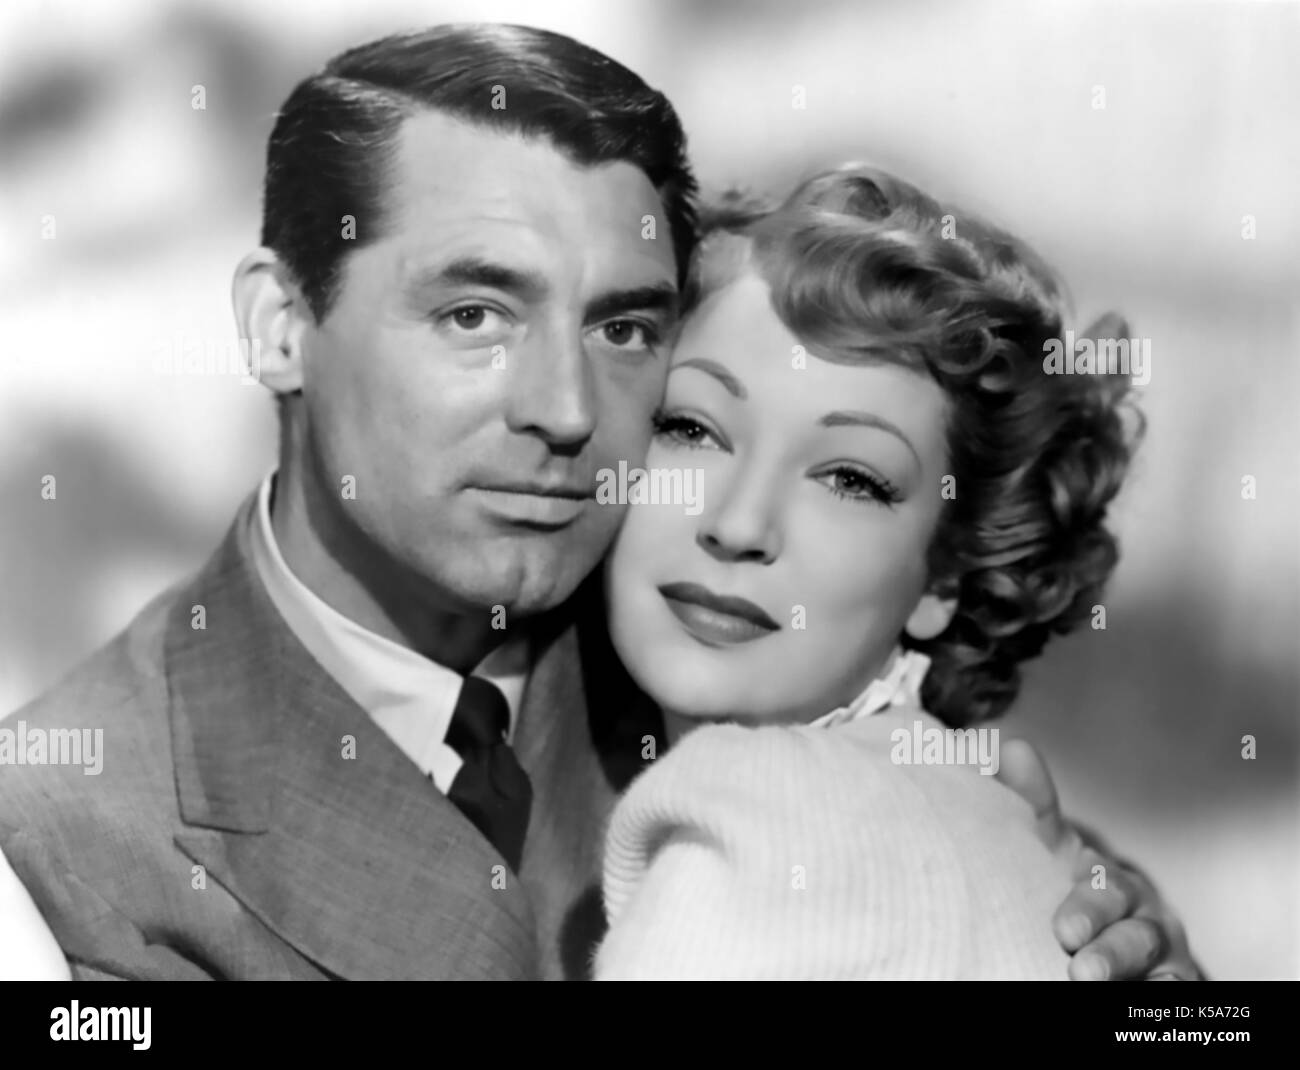 Nessuno TRANNE IL SOLO CUORE 1944 RKO radio Pictures film con Cary Grant e Ethel Barrymore Foto Stock